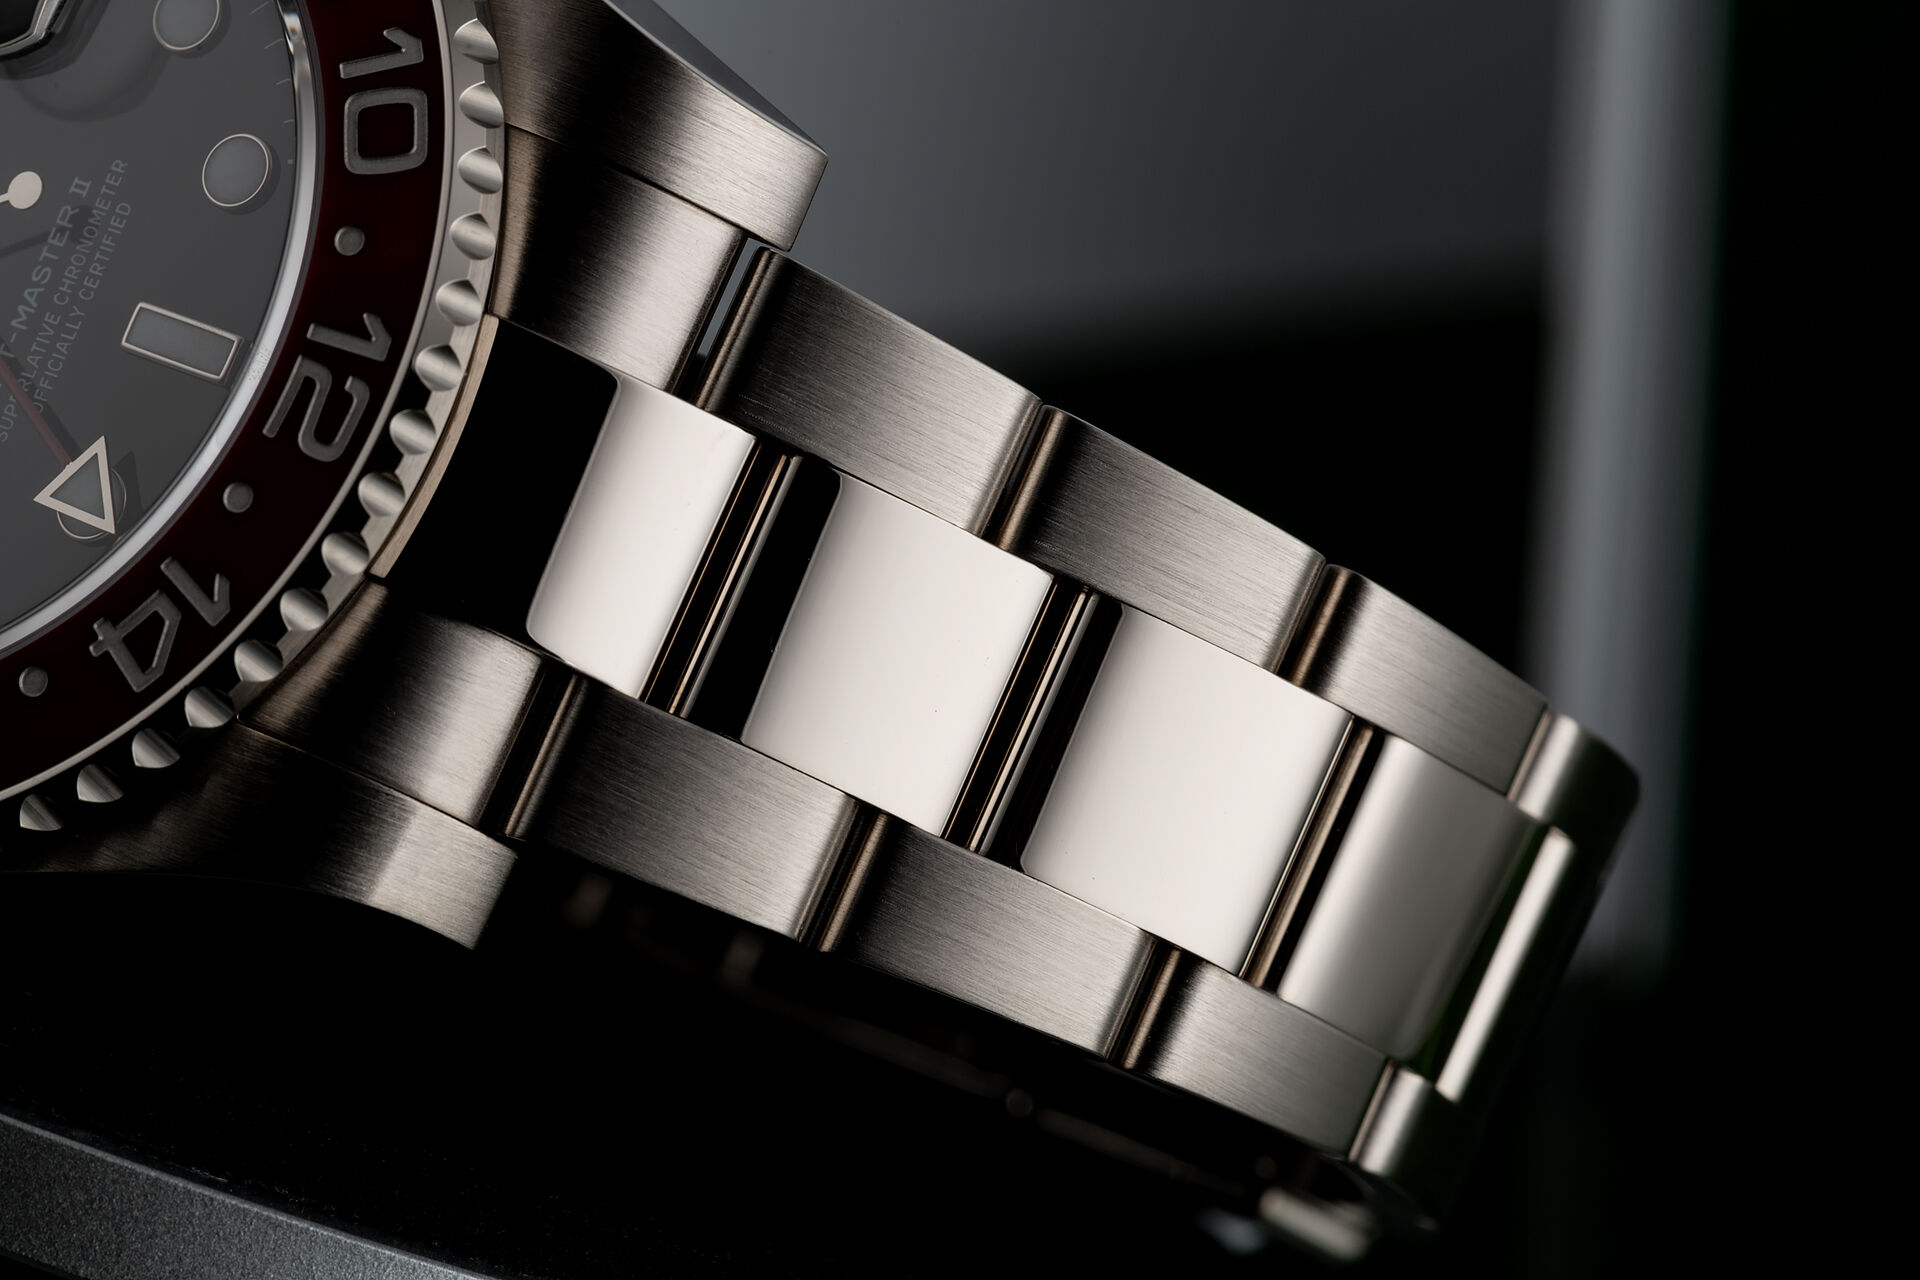 ref 116719BLRO | 'Brand New Condition' | Rolex GMT-Master II